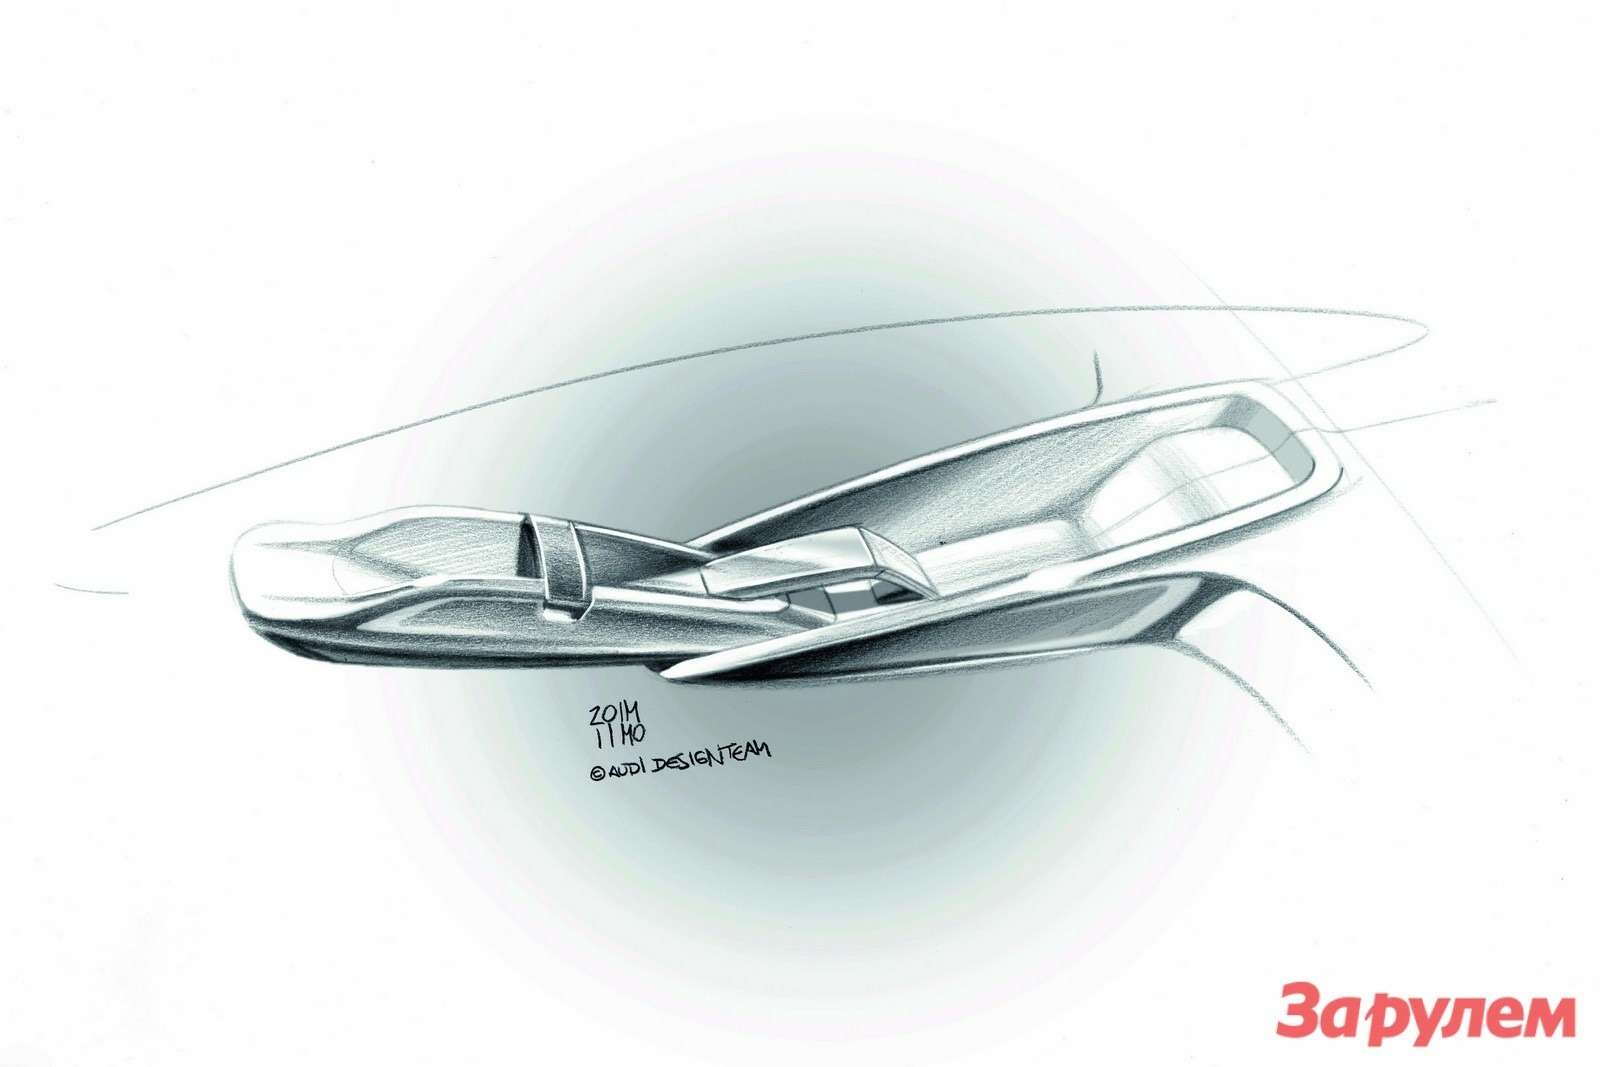 Audi_A2-Concept-21